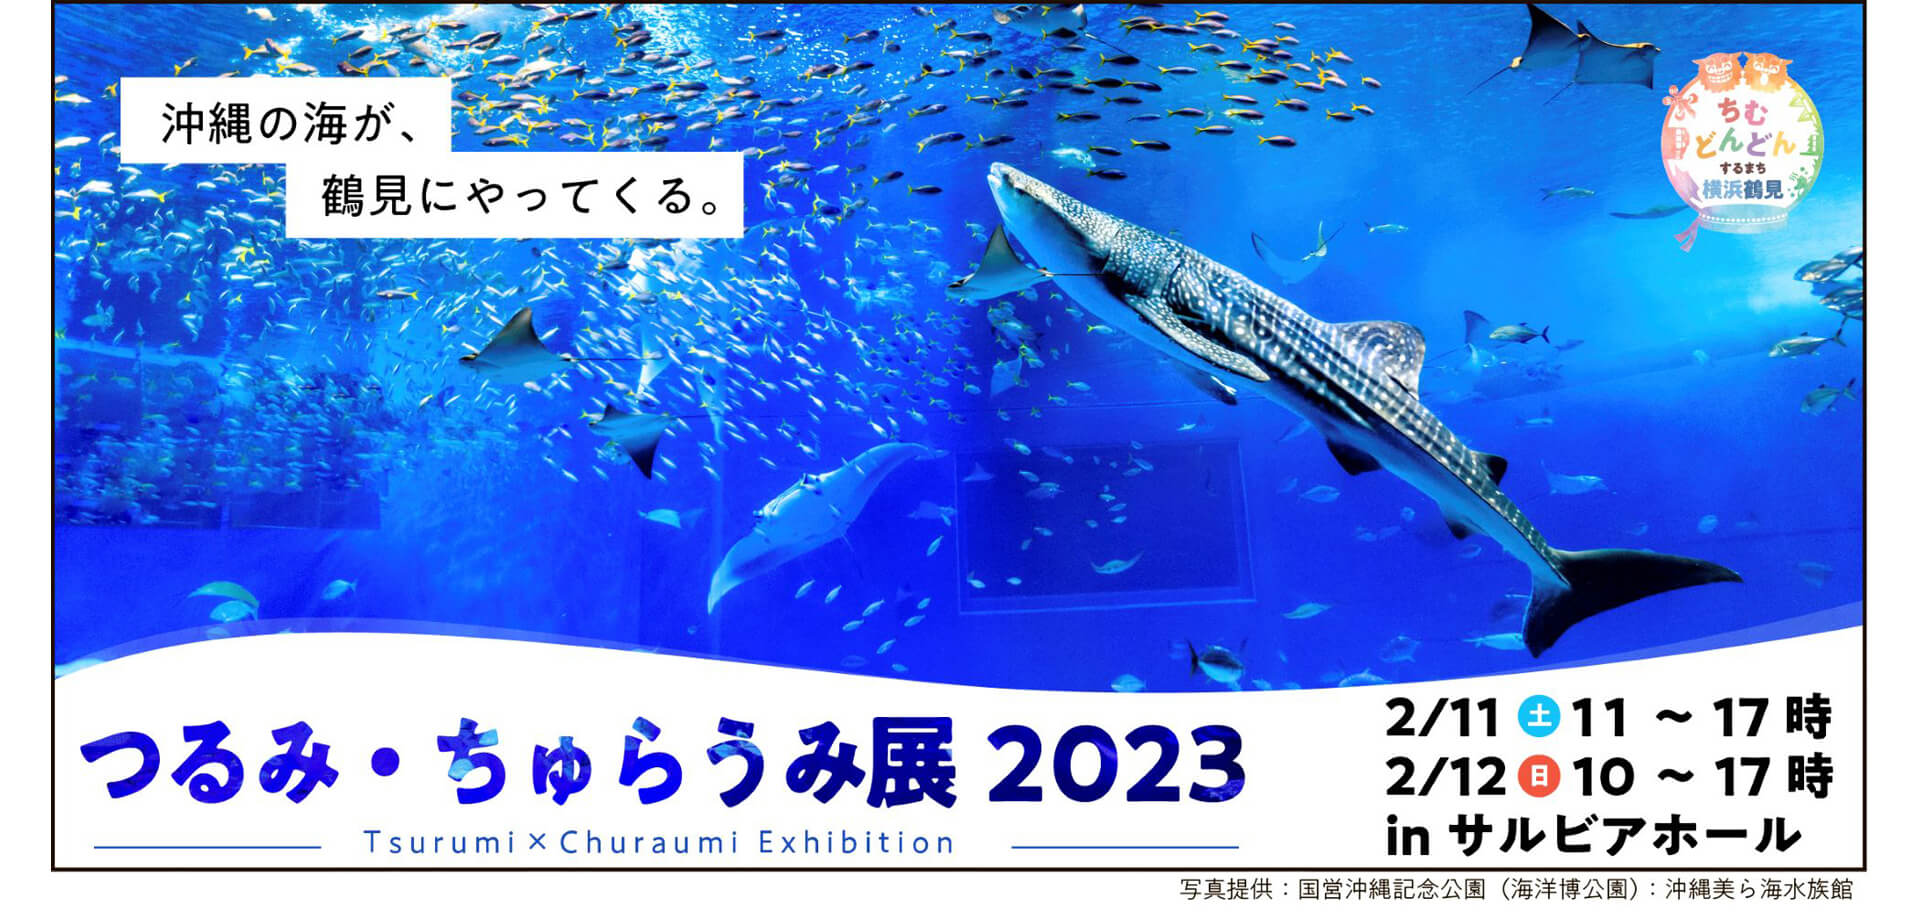 つるみ・ちゅらうみ展2023 横浜市鶴見区民文化センター サルビアホール